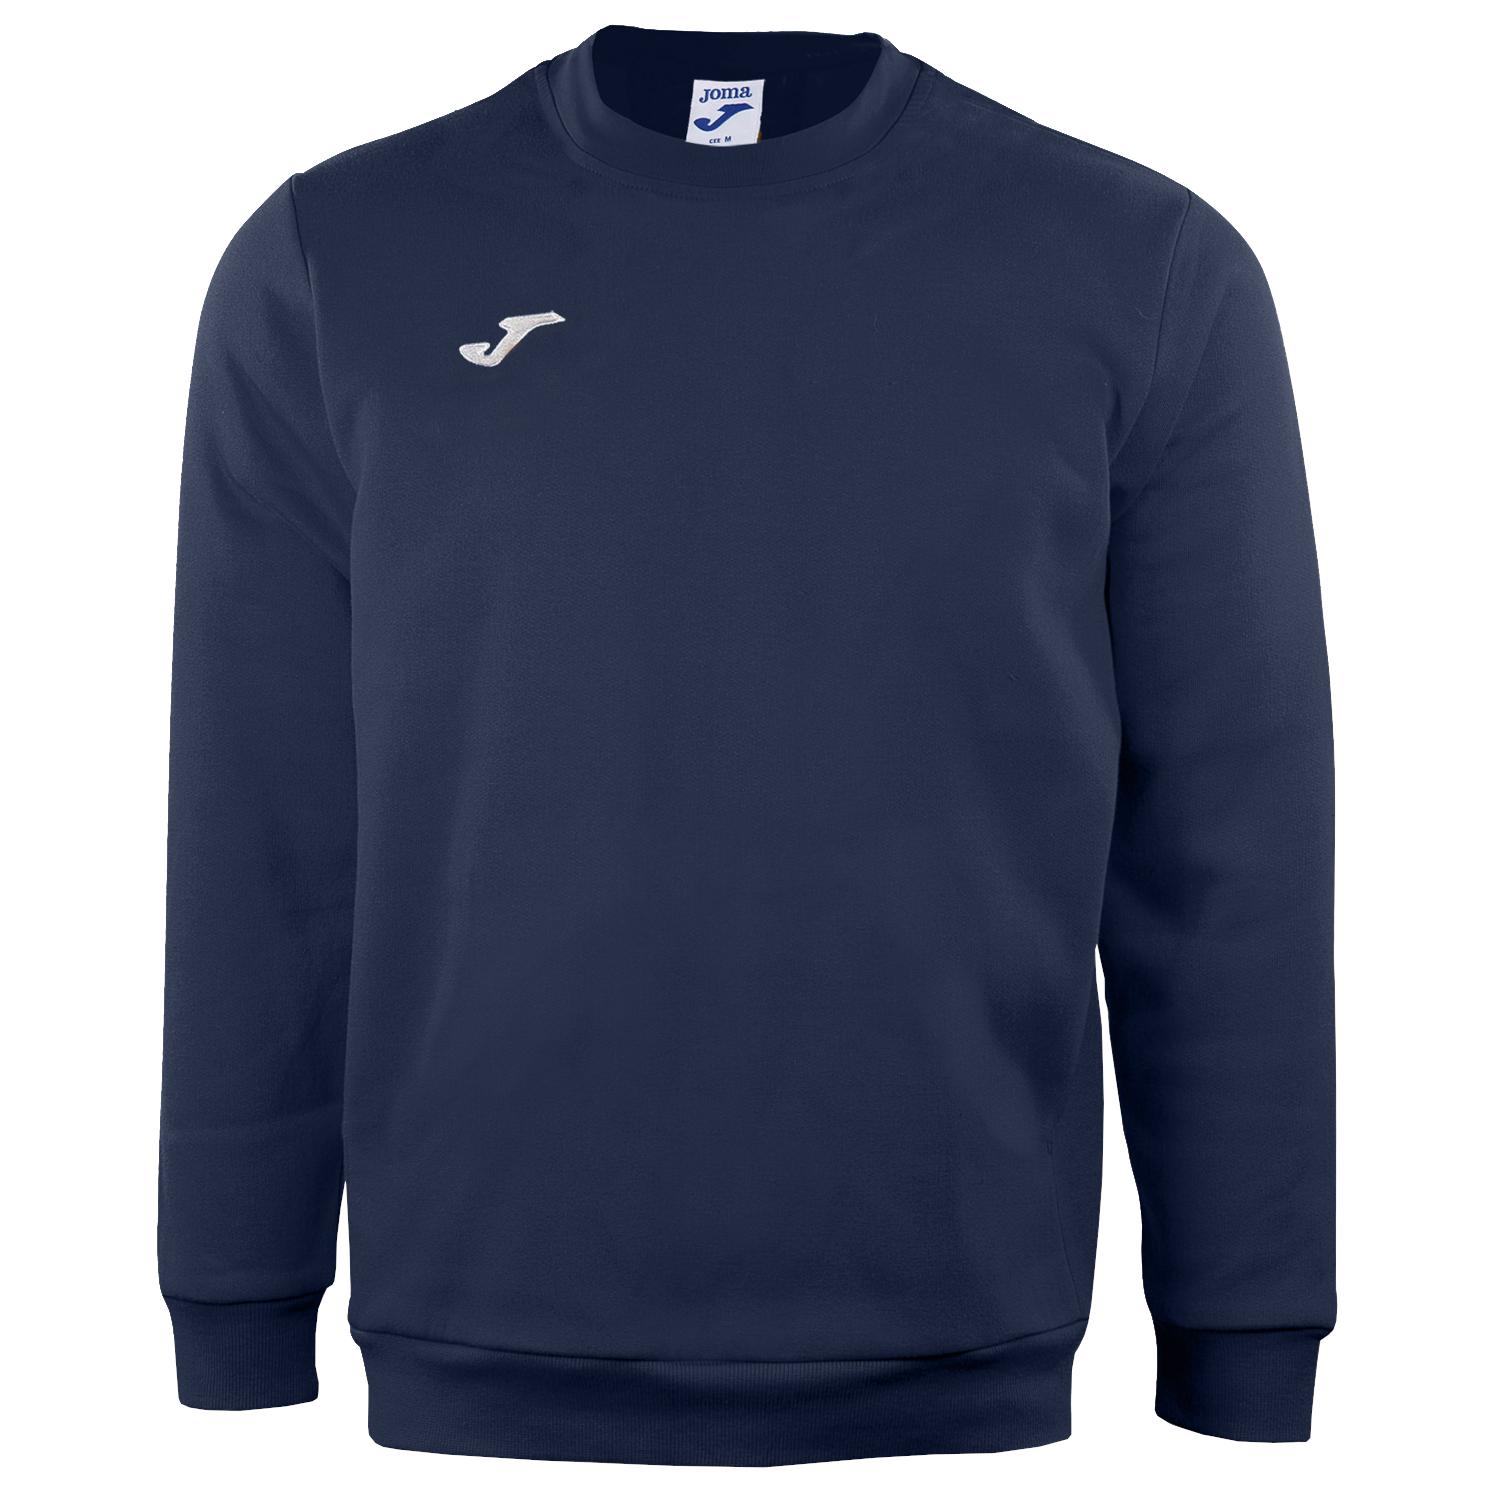 Joma Cairo II Sweatshirt, Heren marineblauw sweatshirt